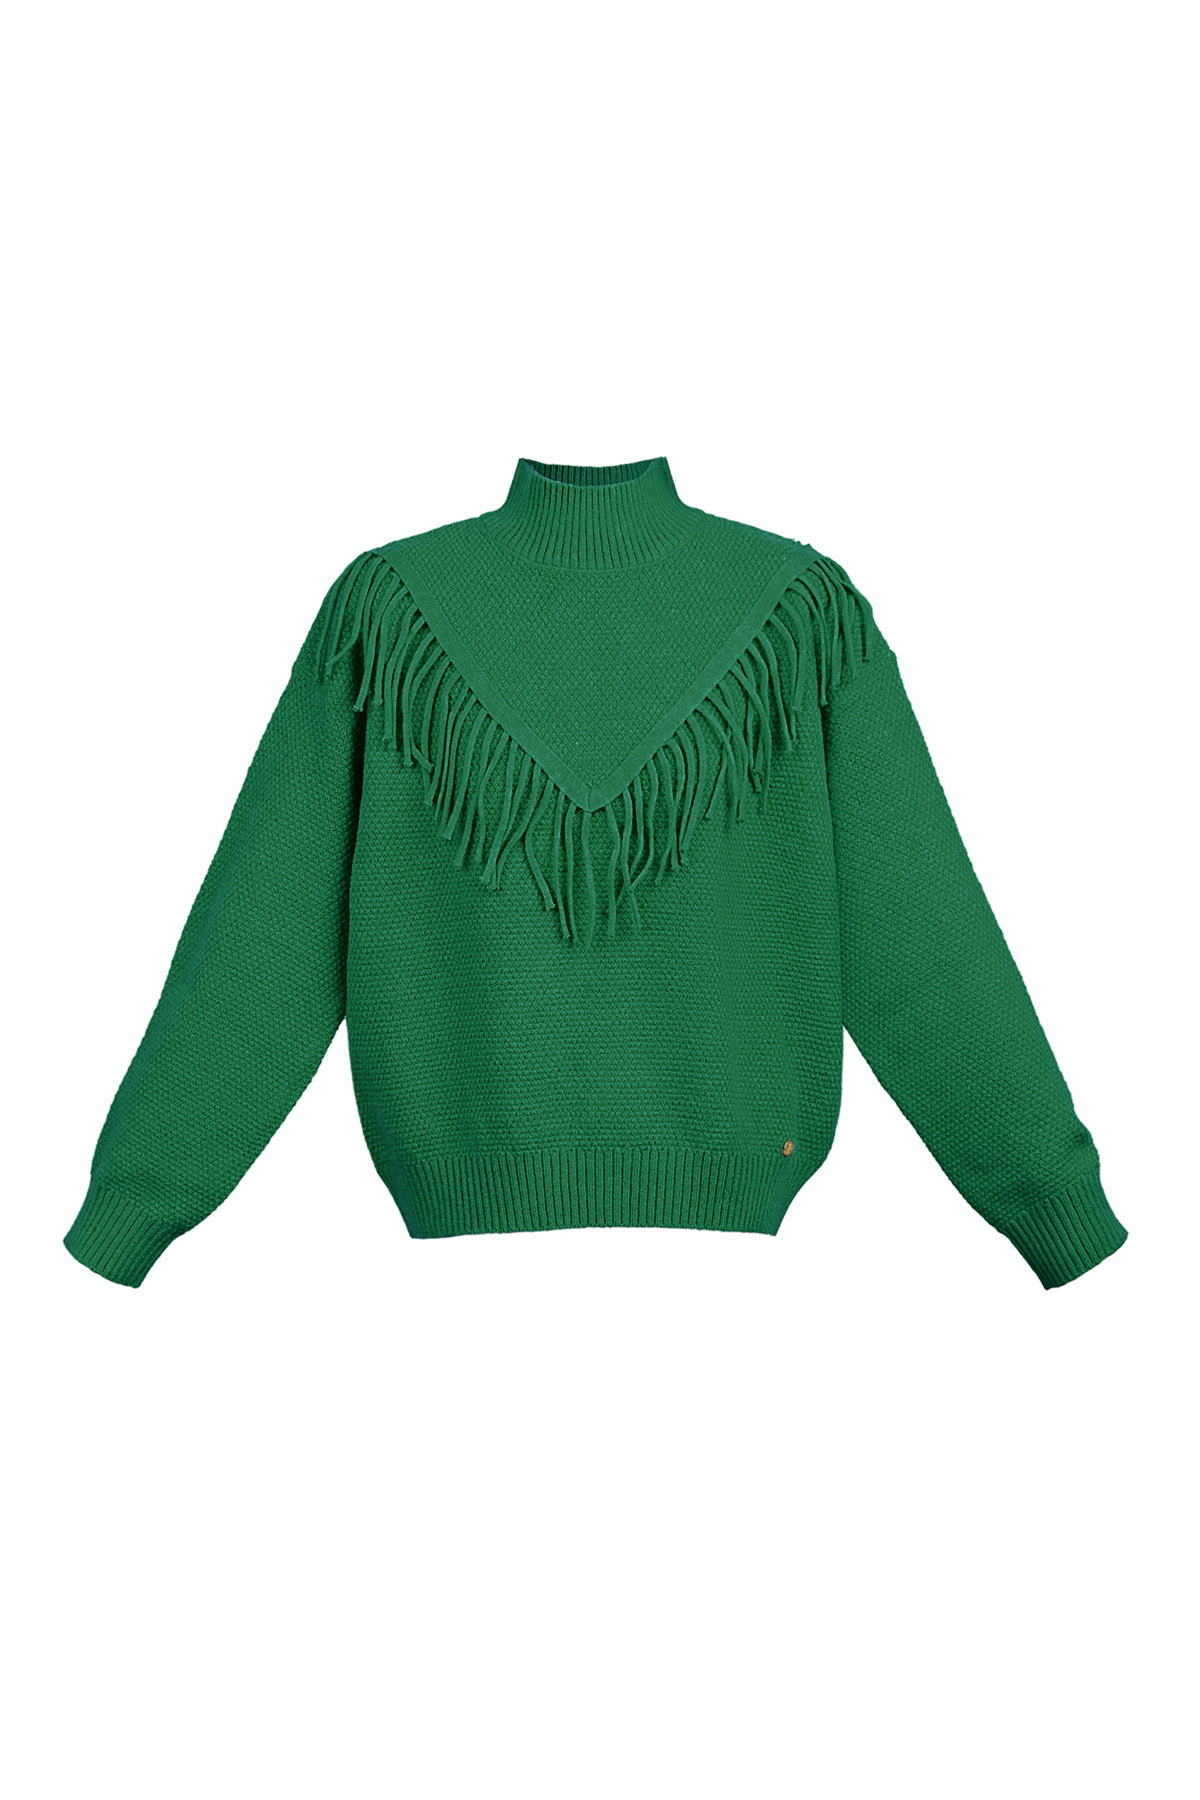 Gestrickter Basic-Pullover mit Fransen – grün